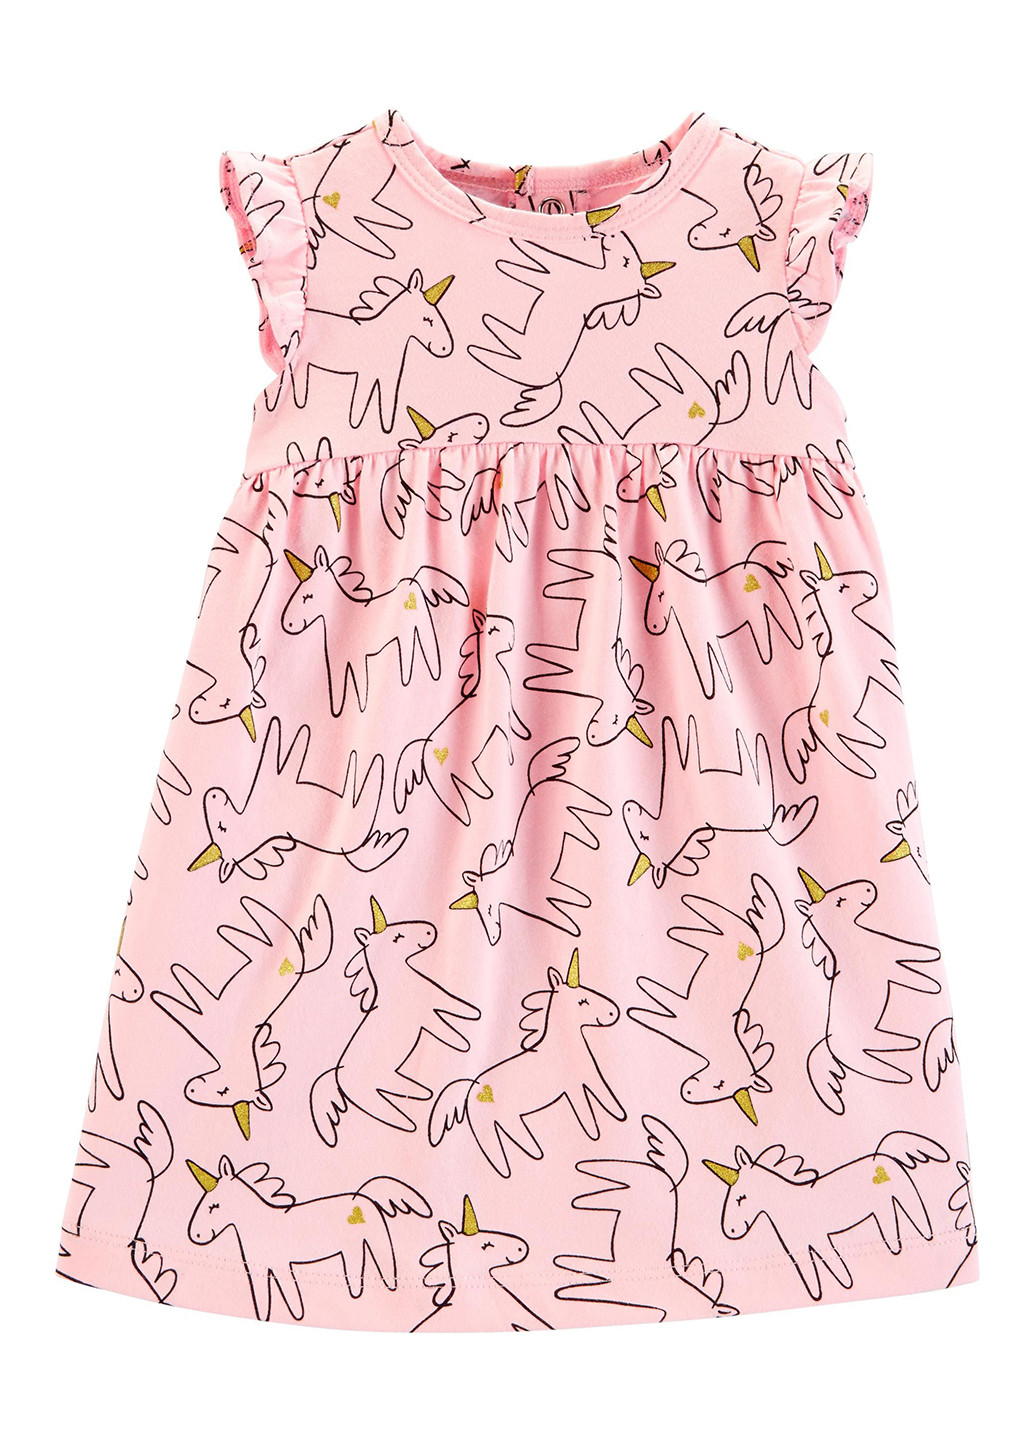 Розовый демисезонный комплект (платье, трусики) Carter's